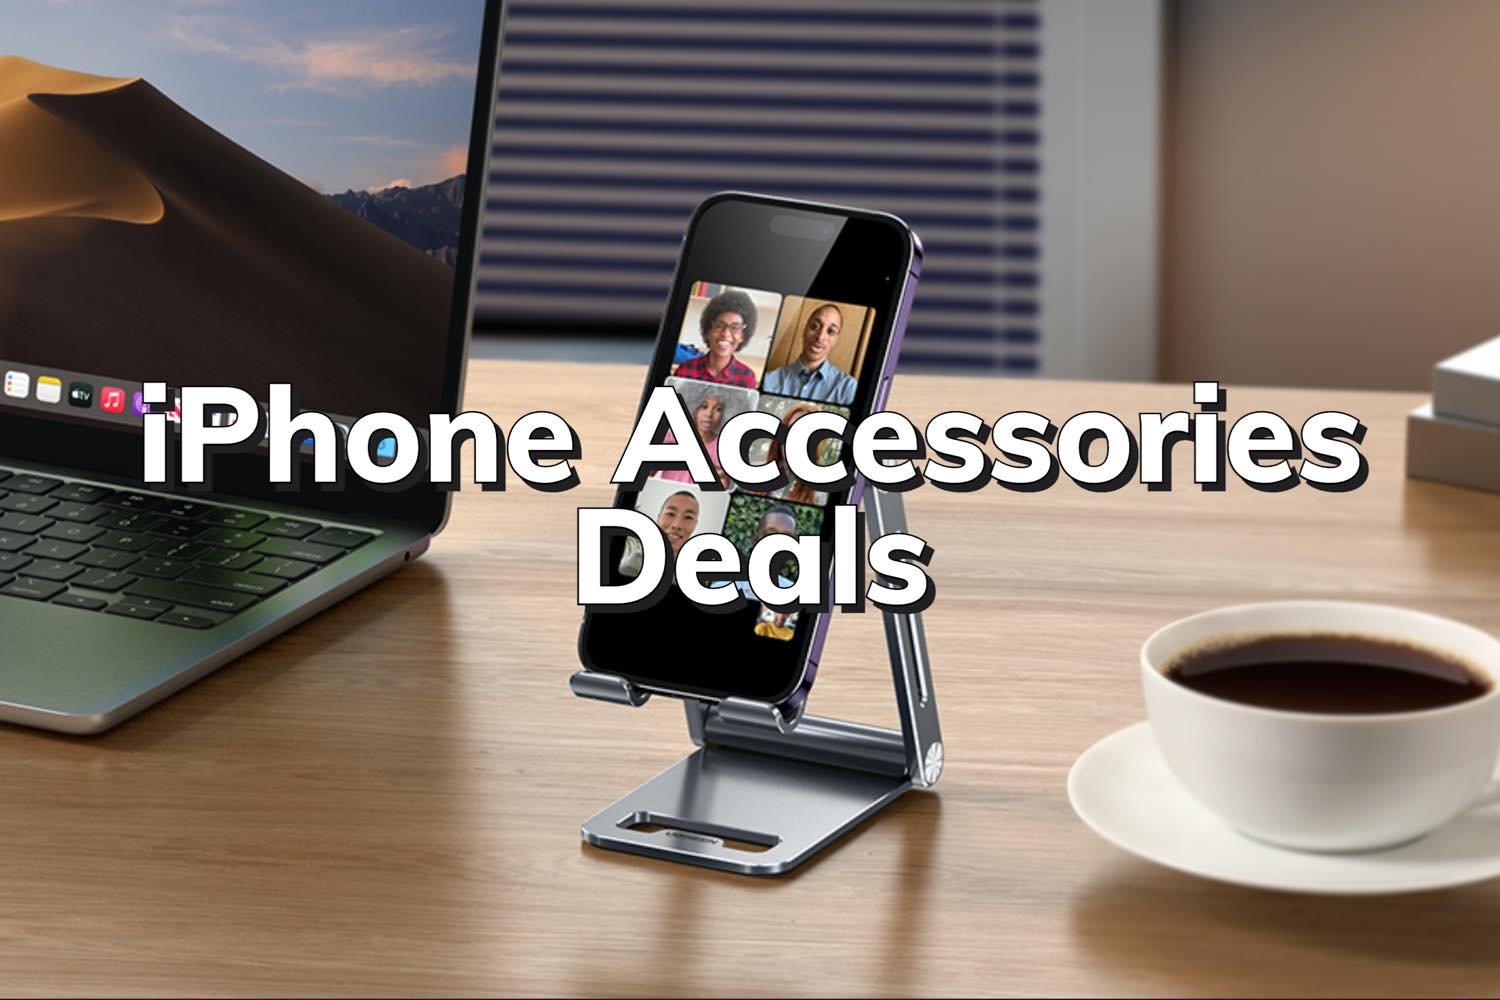 iPhones Accessories Deals